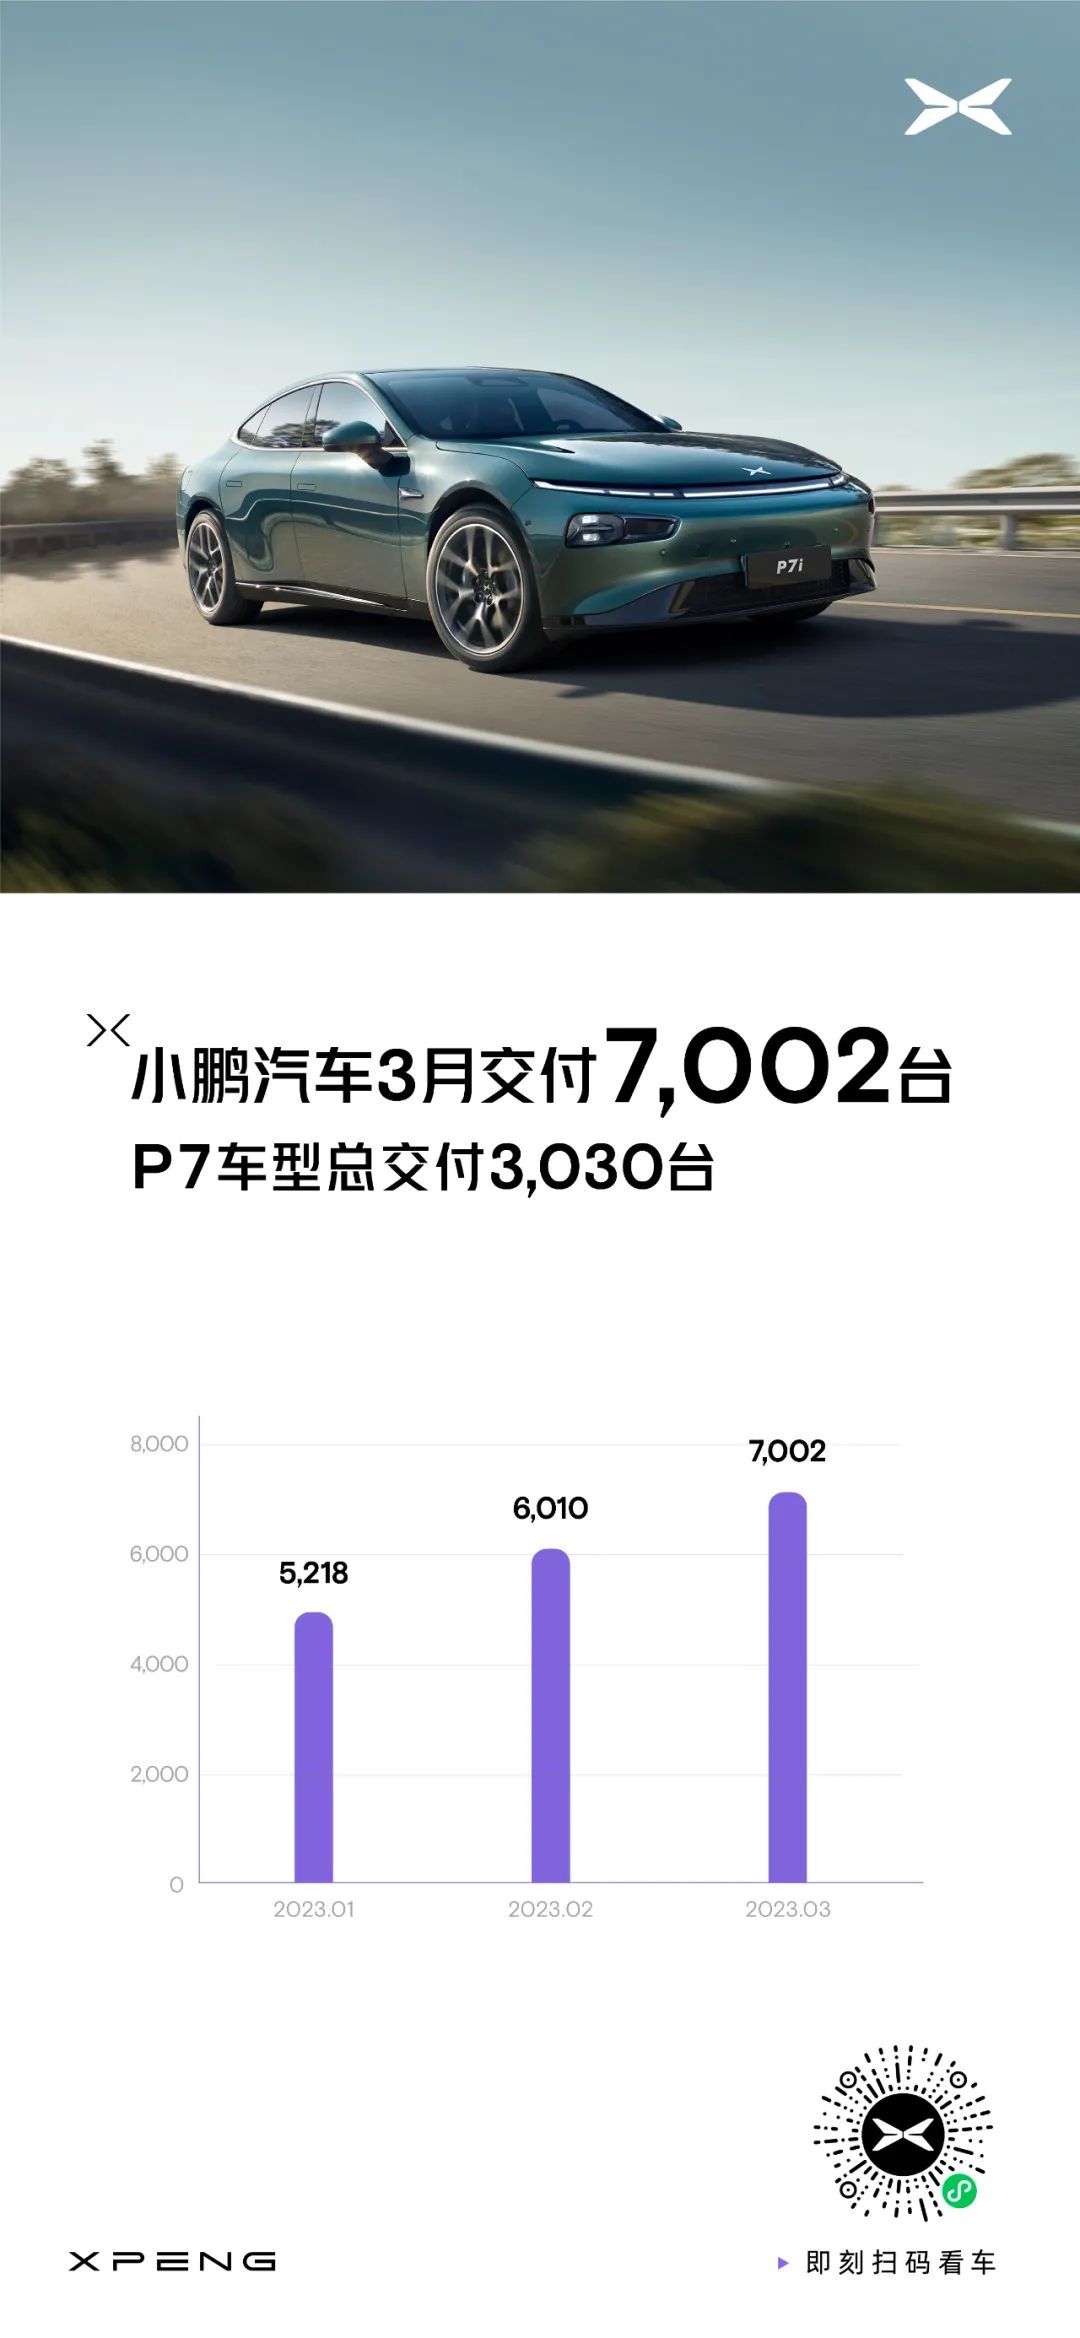 小鹏汽车-W(09868)3月交付7002台 环比增长17%